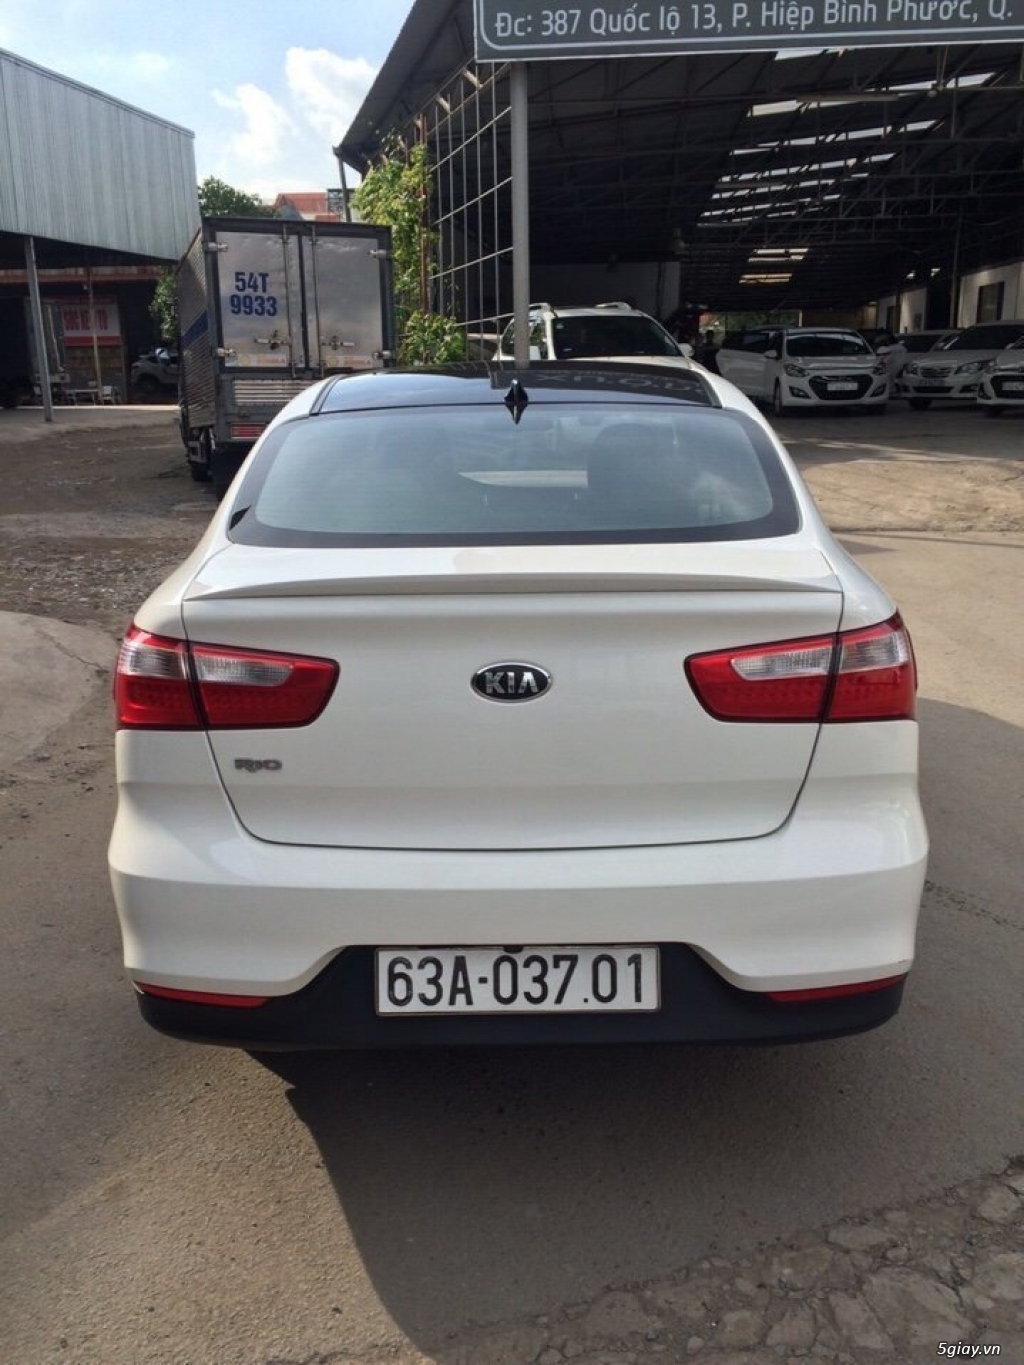 Bán Kia Rio 1.4AT sedan nhập Hàn Quốc 2015 số tự động màu trắng - 2